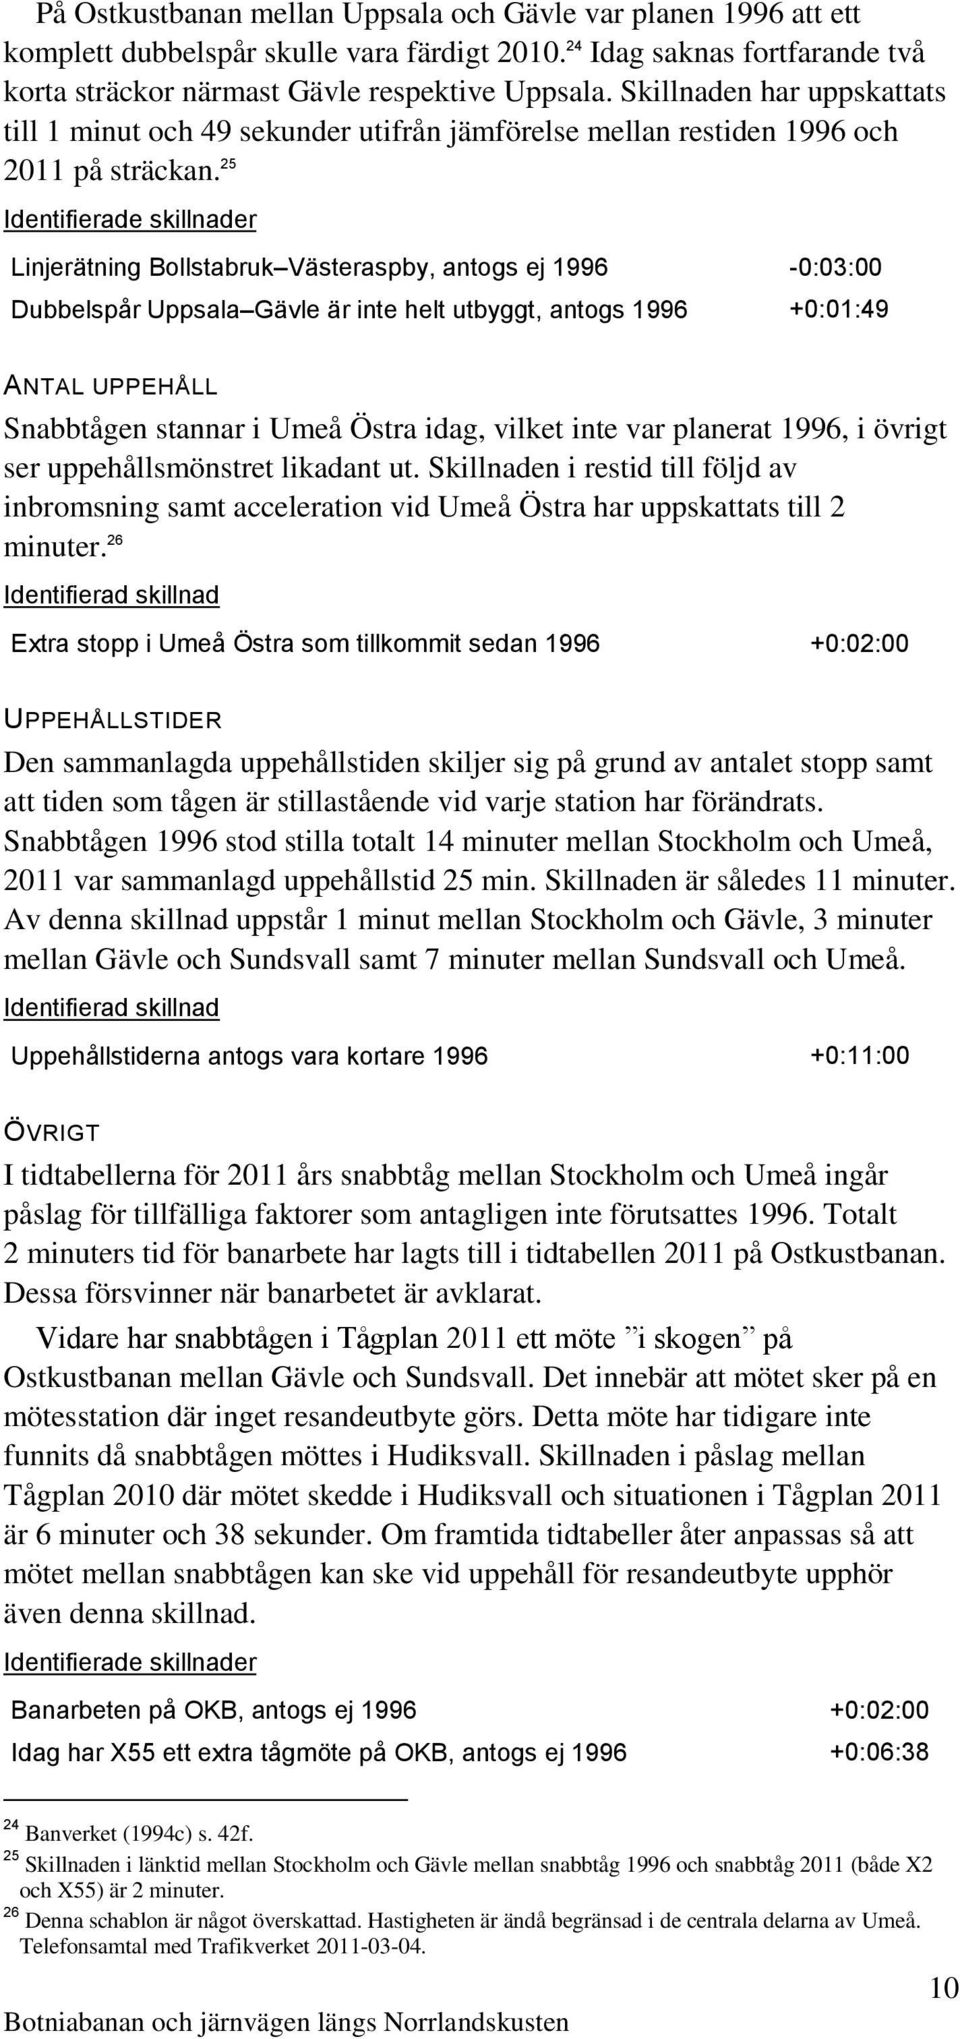 25 Identifierade skillnader Linjerätning Bollstabruk Västeraspby, antogs ej 1996-0:03:00 Dubbelspår Uppsala Gävle är inte helt utbyggt, antogs 1996 +0:01:49 ANTAL UPPEHÅLL Snabbtågen stannar i Umeå